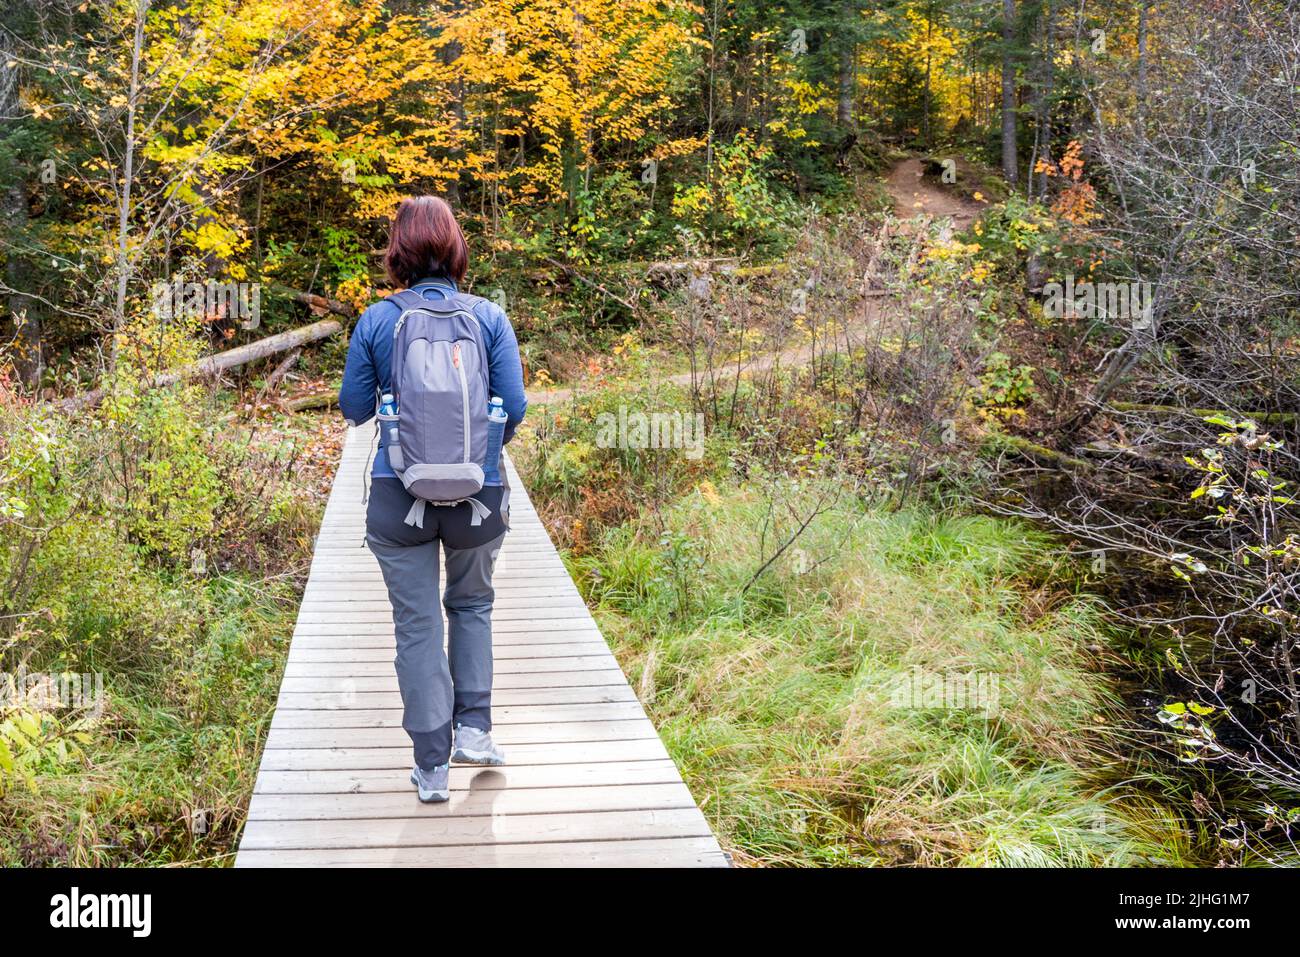 Loney mujer excursionista en una pasarela de madera a lo largo de un camino forestal en otoño Foto de stock